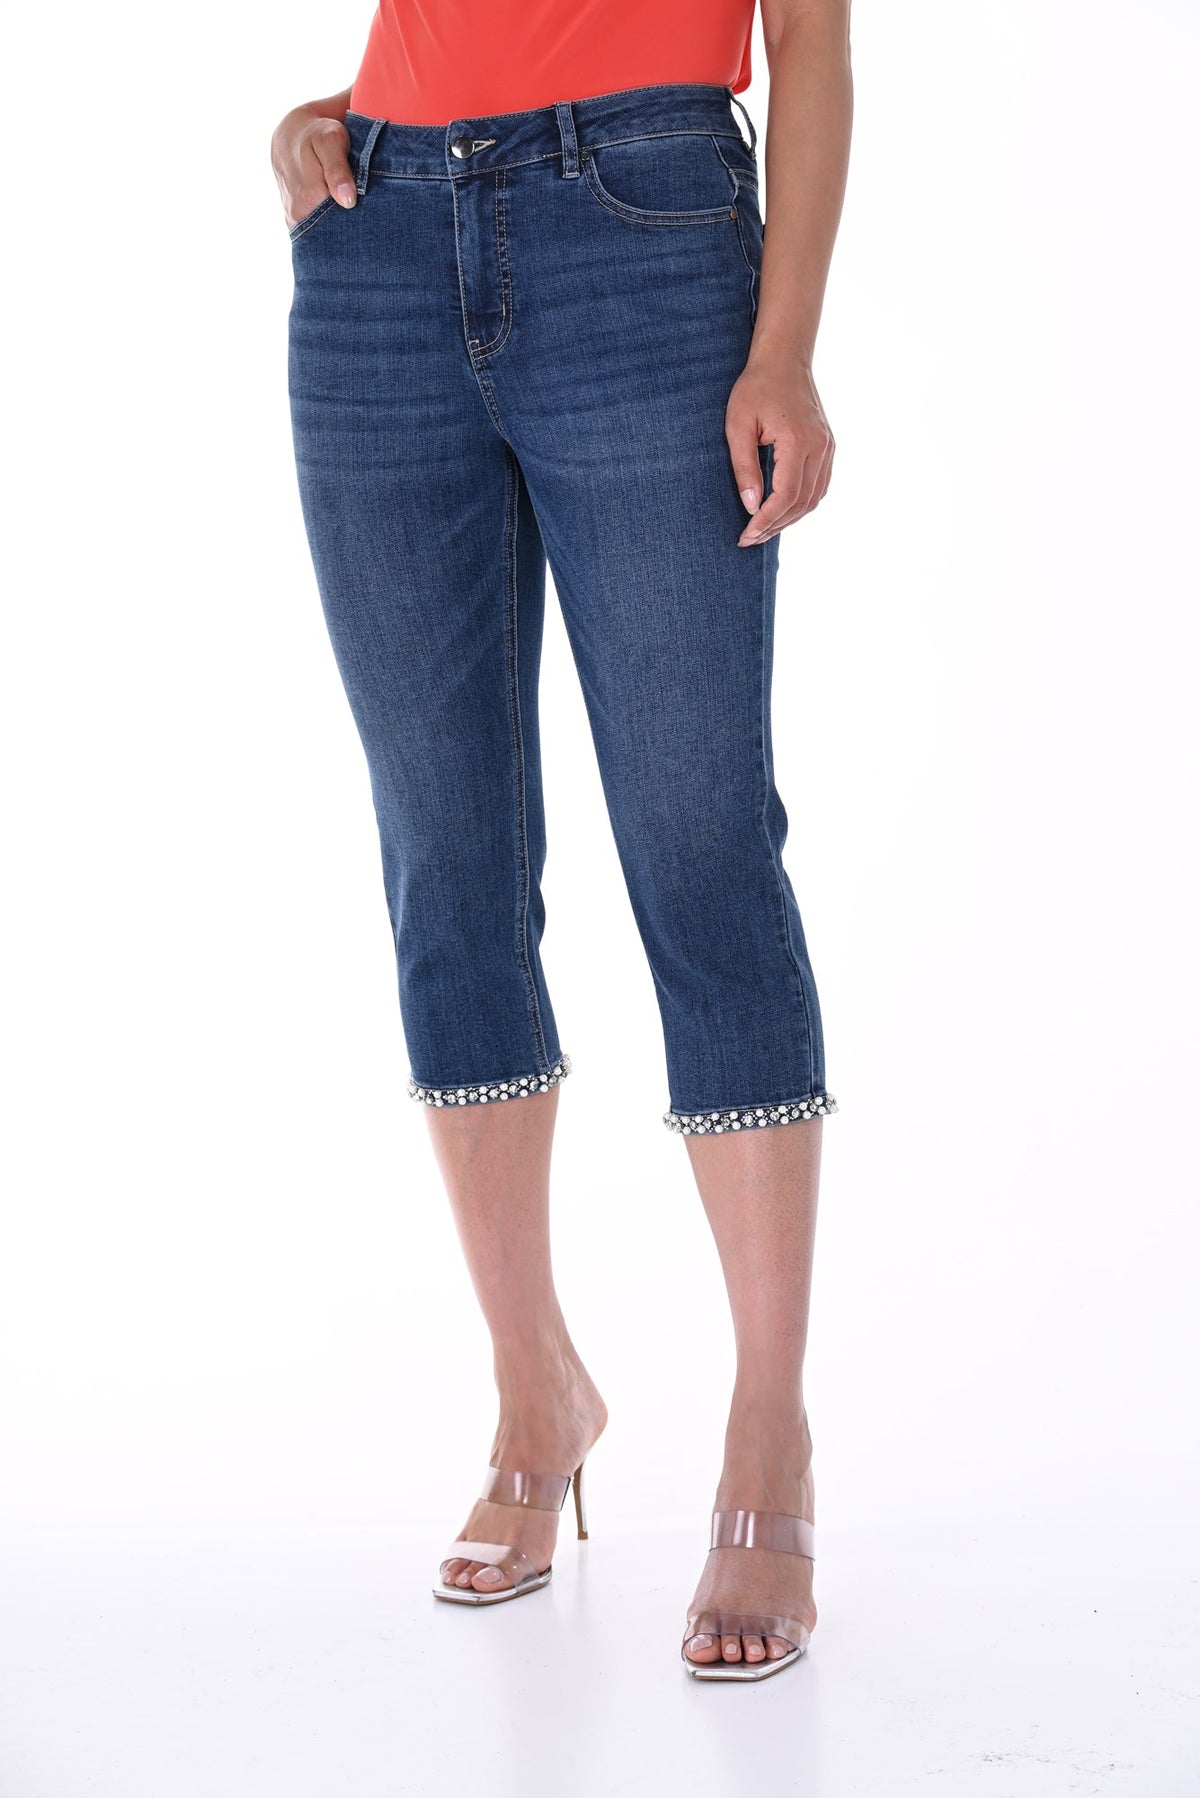 Jeans pour femme par Frank Lyman | 246271U BLUE | Boutique Vvög, vêtements mode pour homme et femme